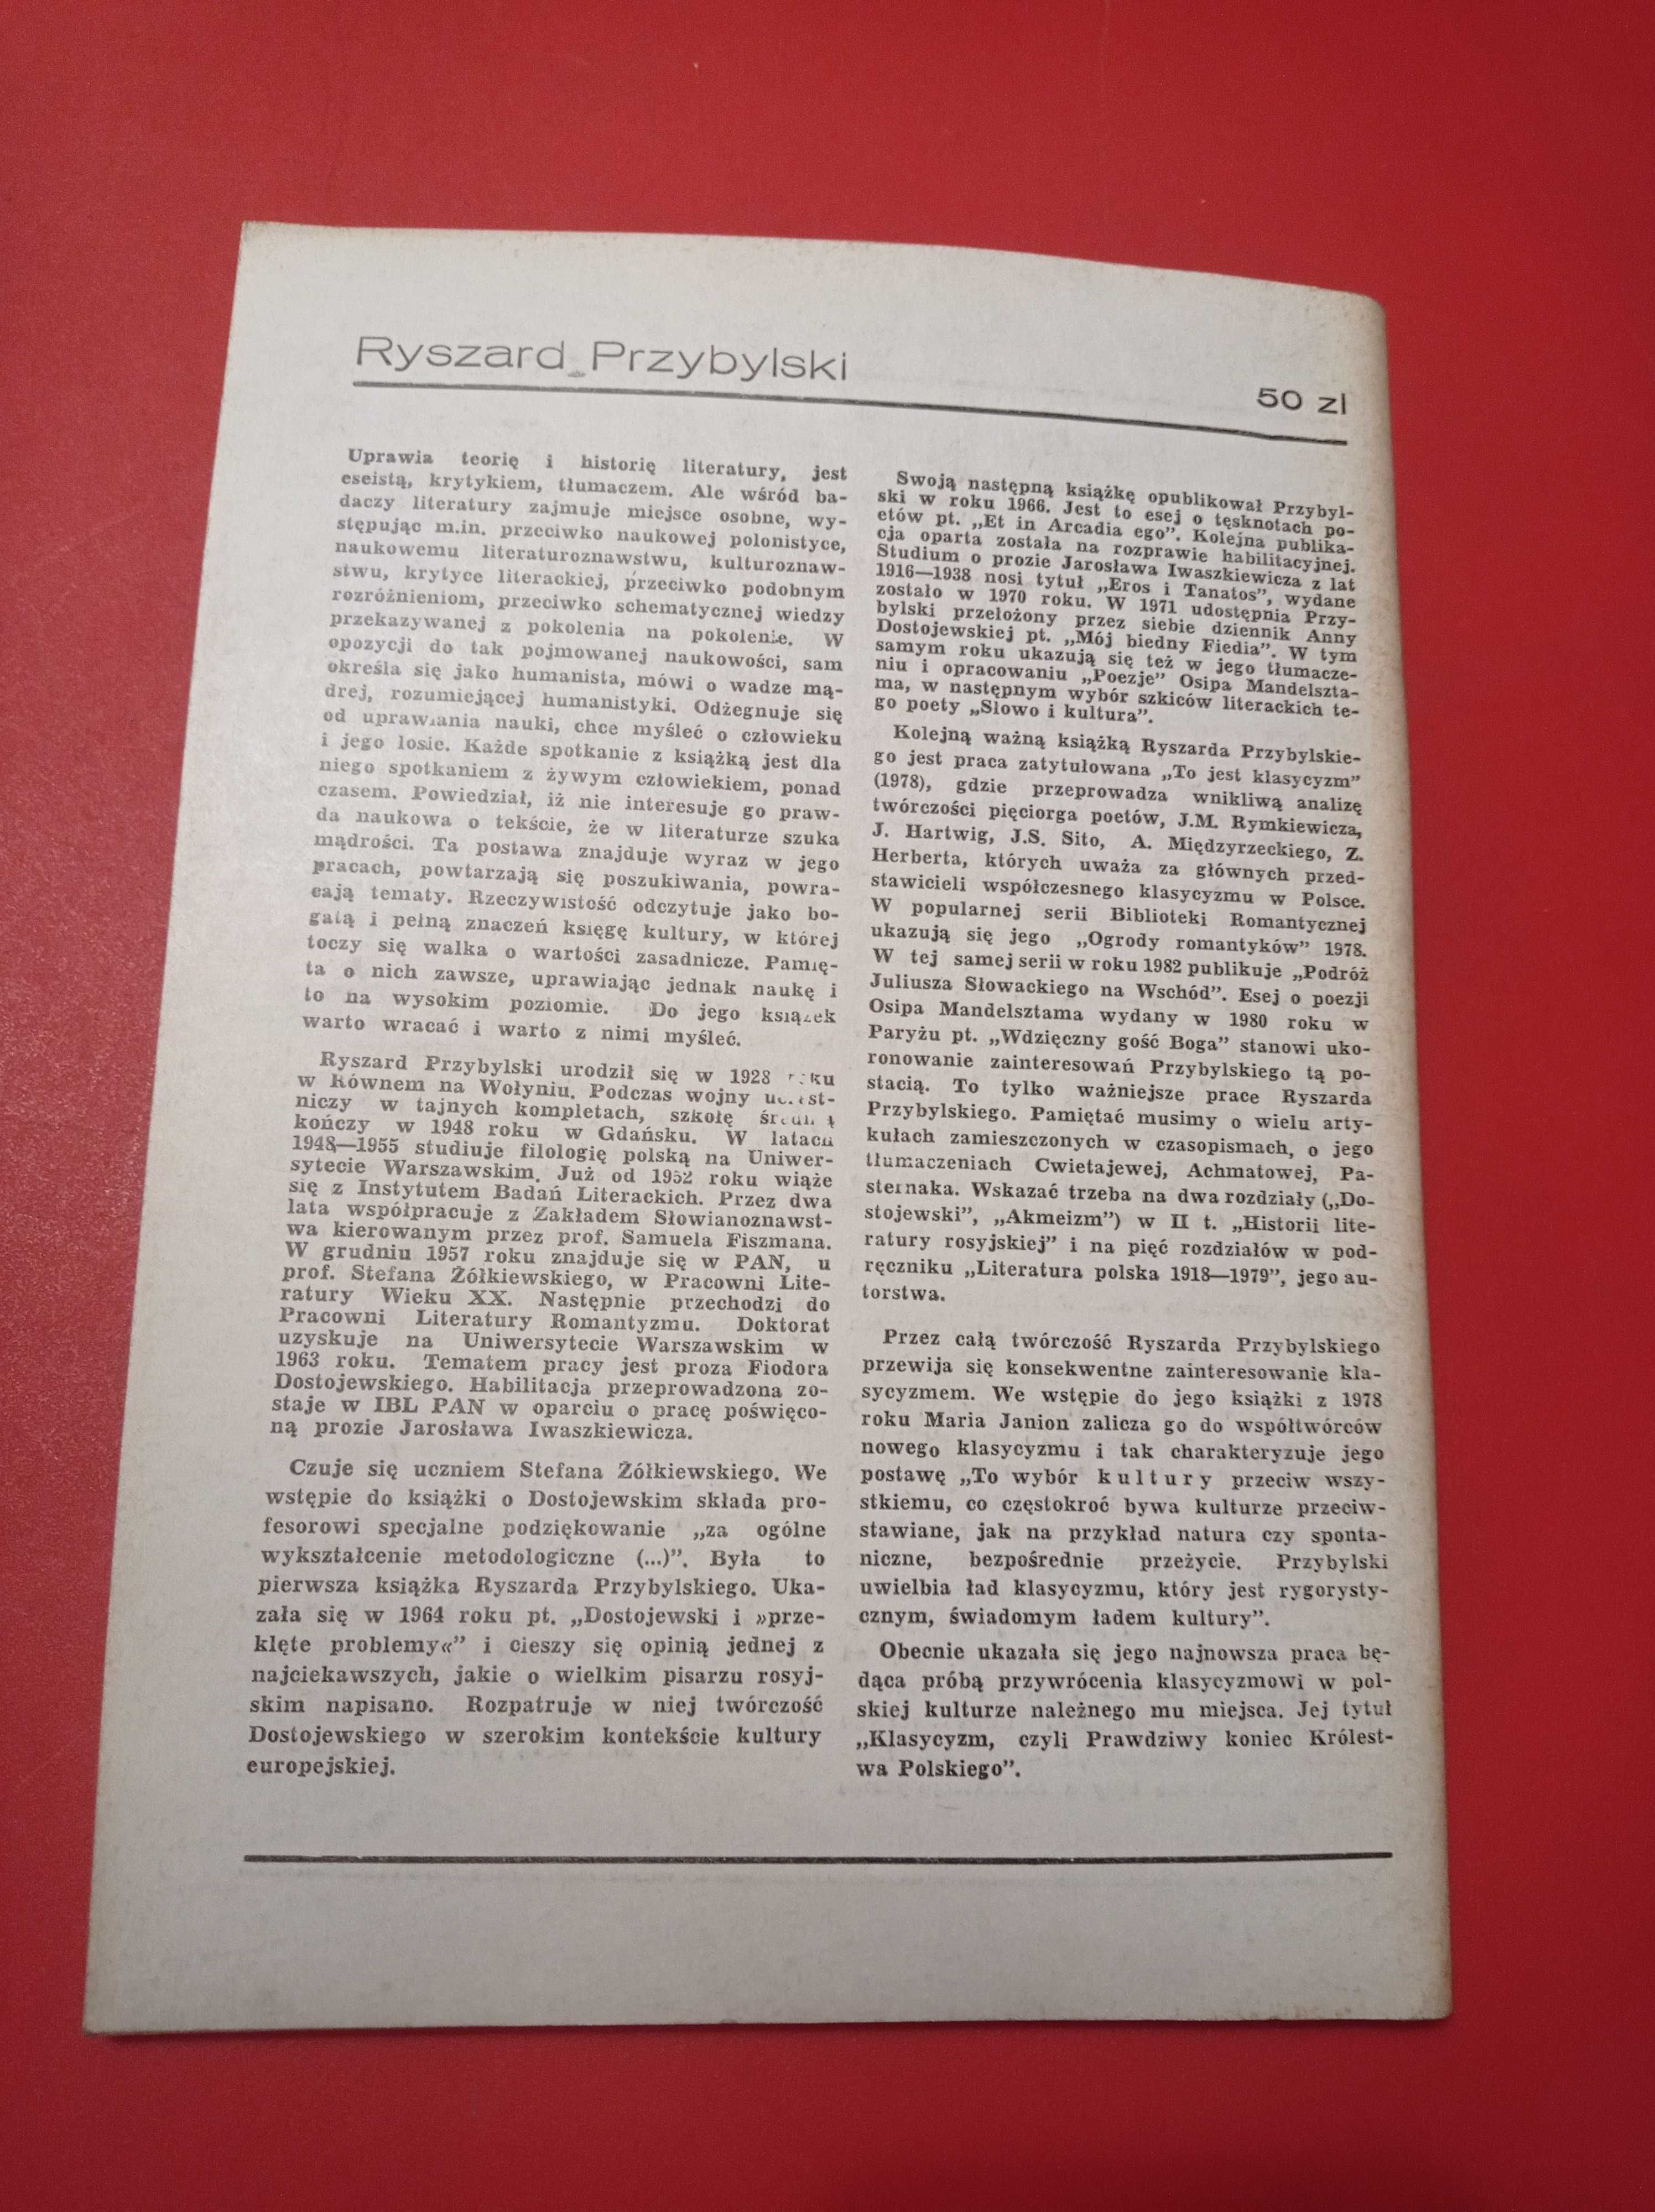 Nowe książki, nr 9, wrzesień 1984, Ryszard Przybylski